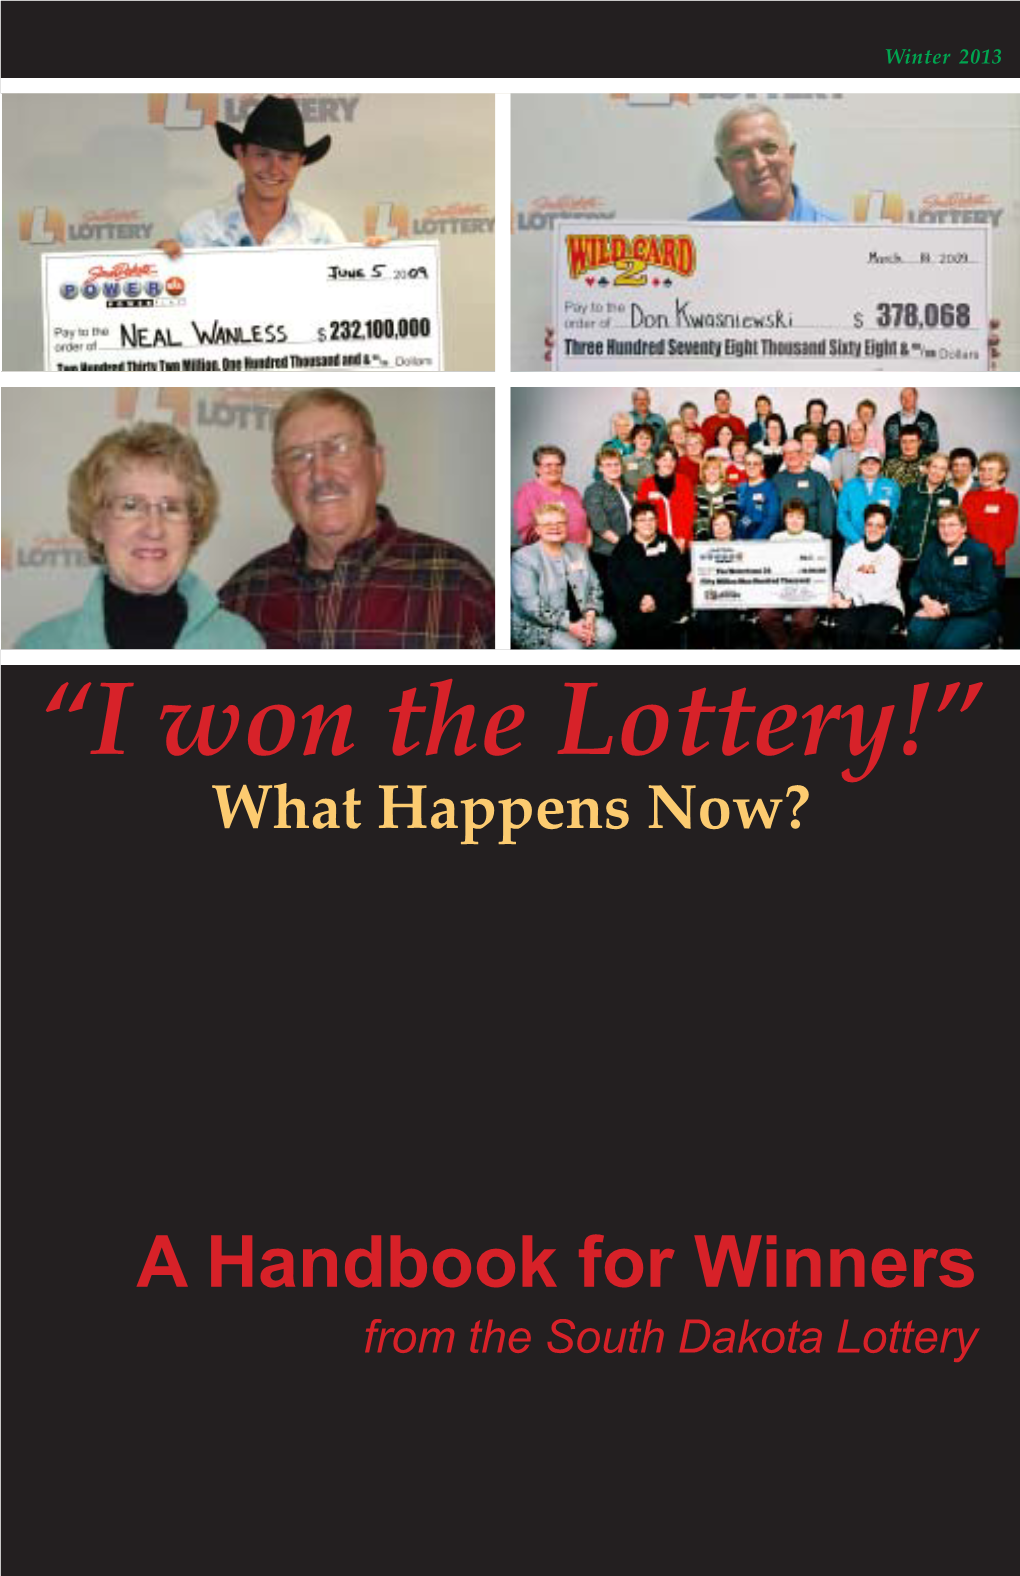 Winner's Handbook